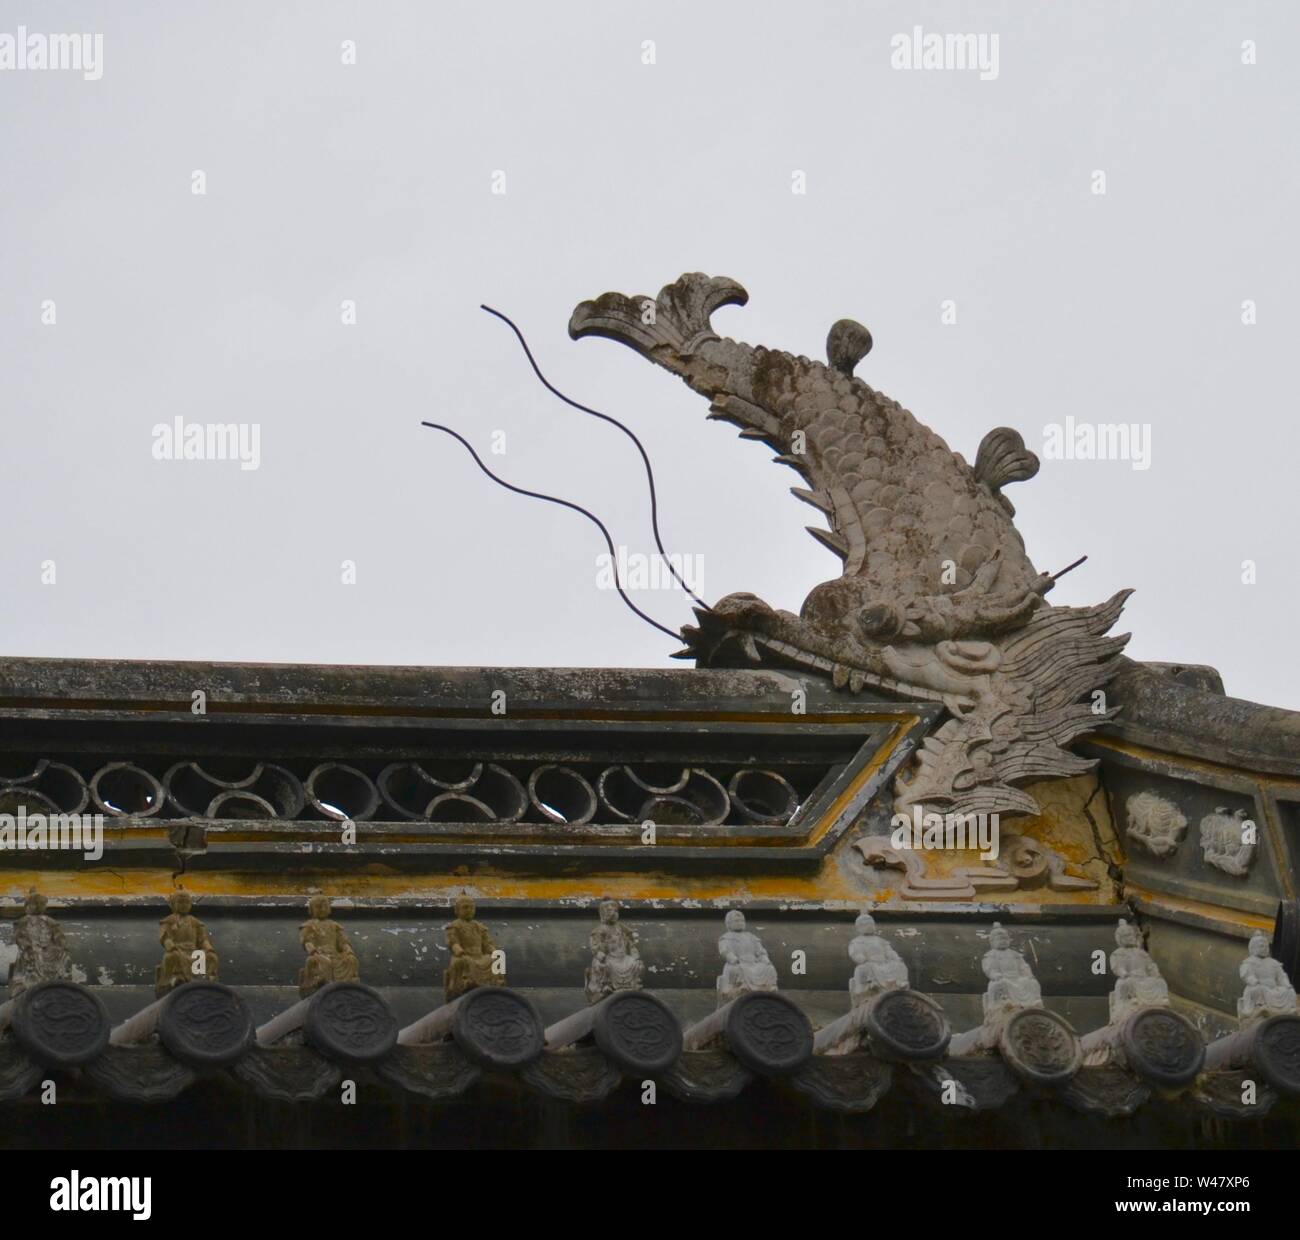 Statue de pierre d'un dragon chinois avec le corps d'un poisson sculpté, de manger le toit d'une construction traditionnelle en Asie, contre un ciel gris Banque D'Images